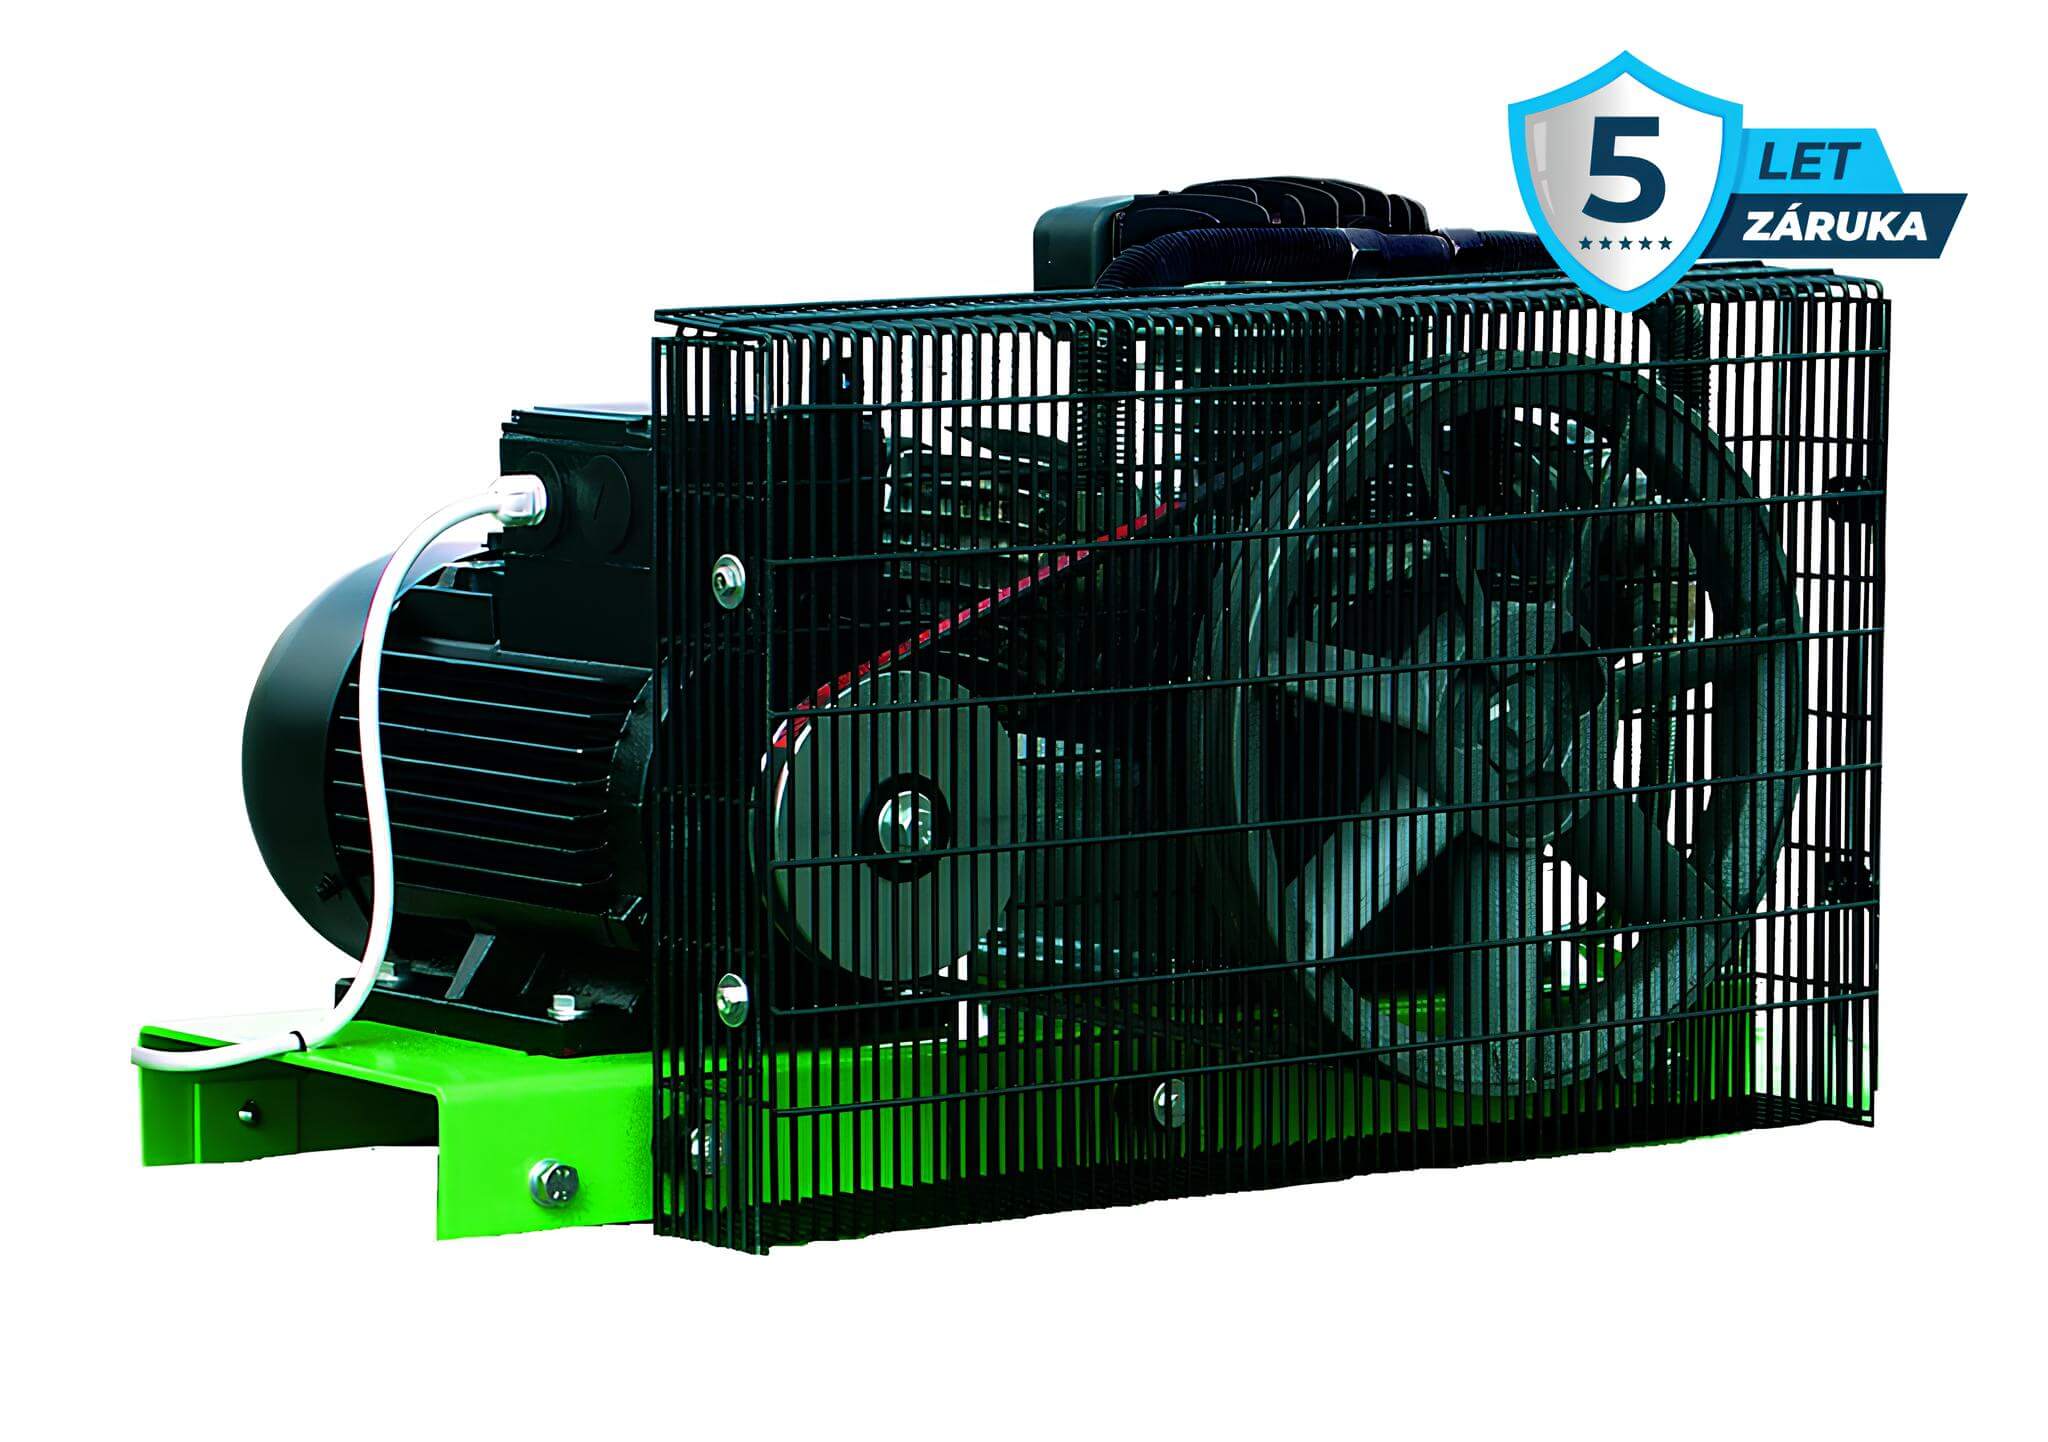 Atmos Pístový kompresor Perfect - 4PFT příkon 4,0 kW, výkon 650 l/min, tlak 10 bar, vzdušník 0 l, napětí 400/50 V/Hz